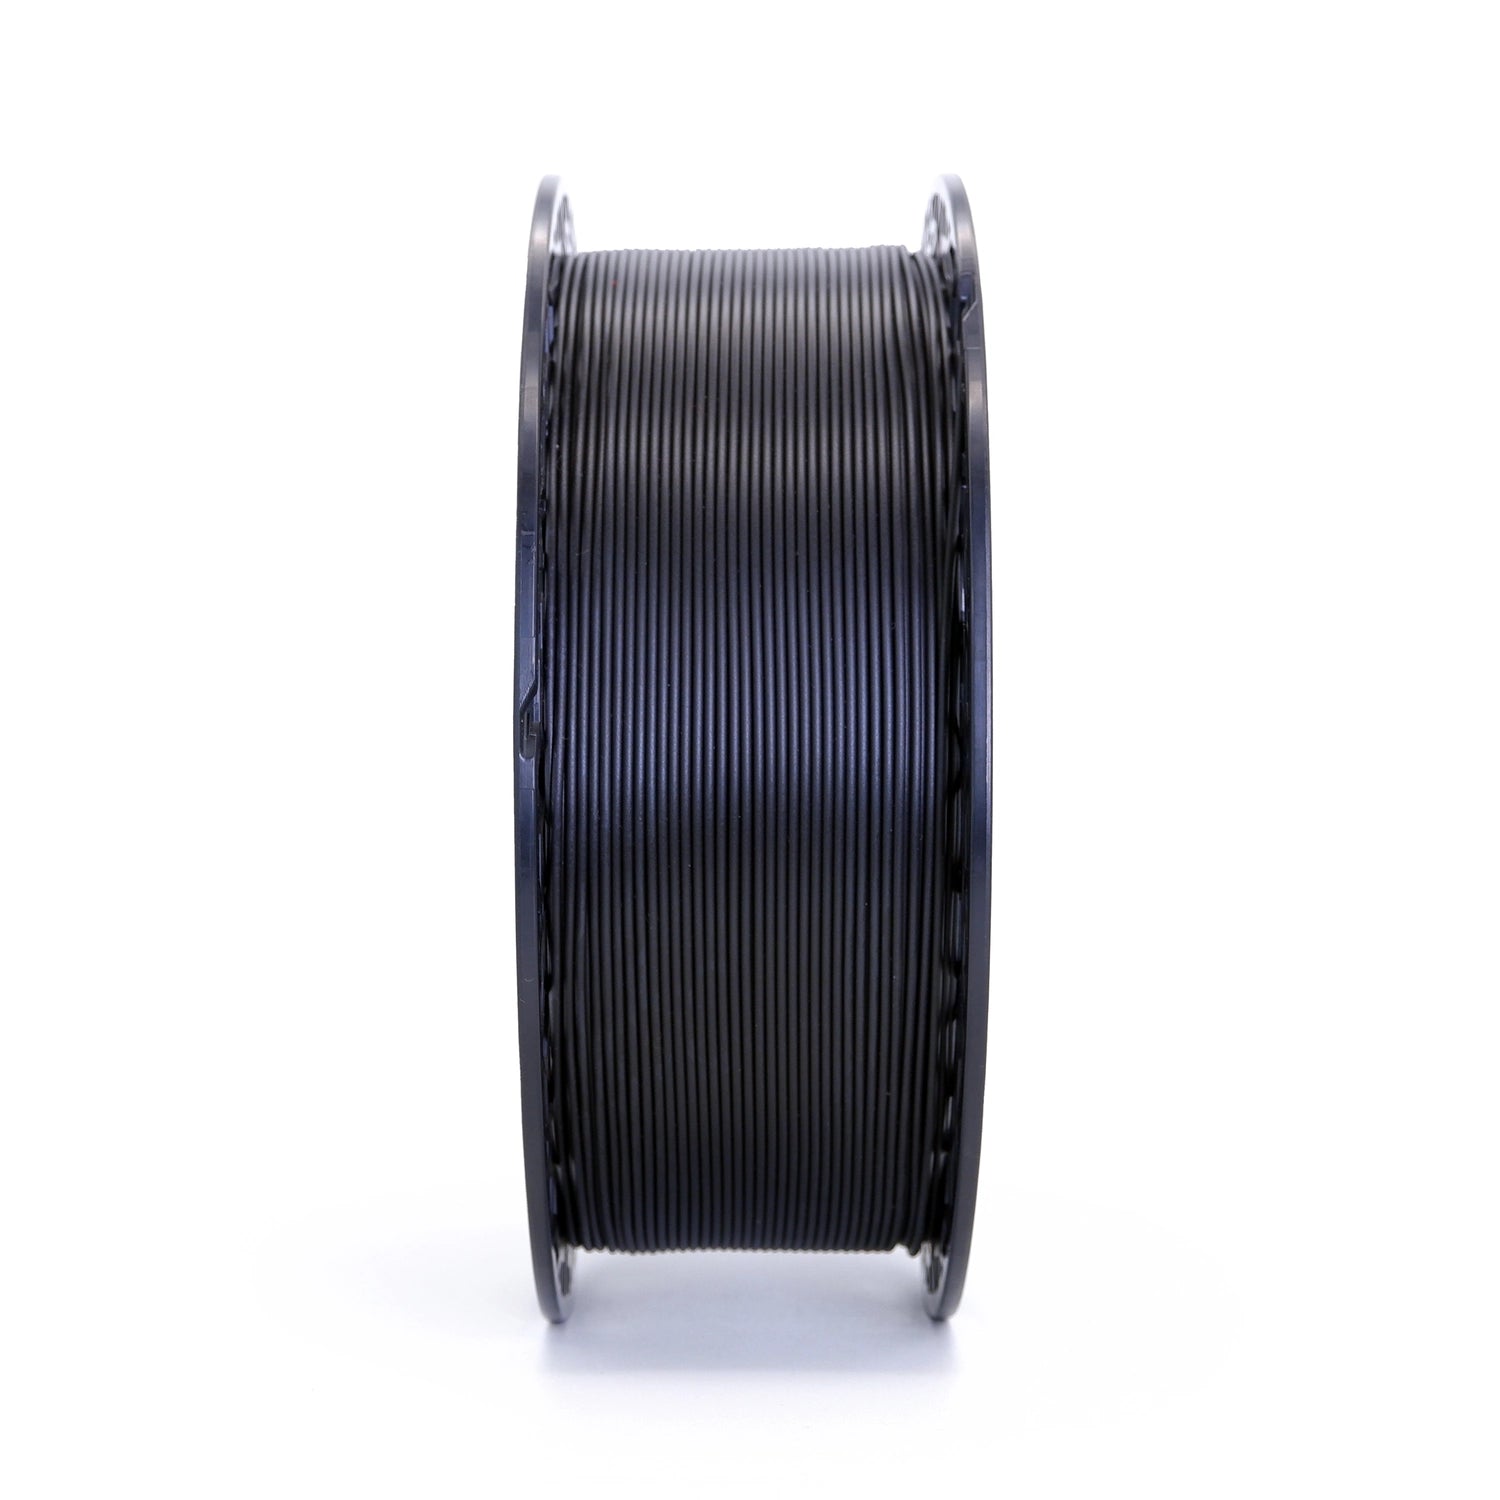 BEST VALUE Filament PLA 1.75mm noir 1kg, 22.50 CHF